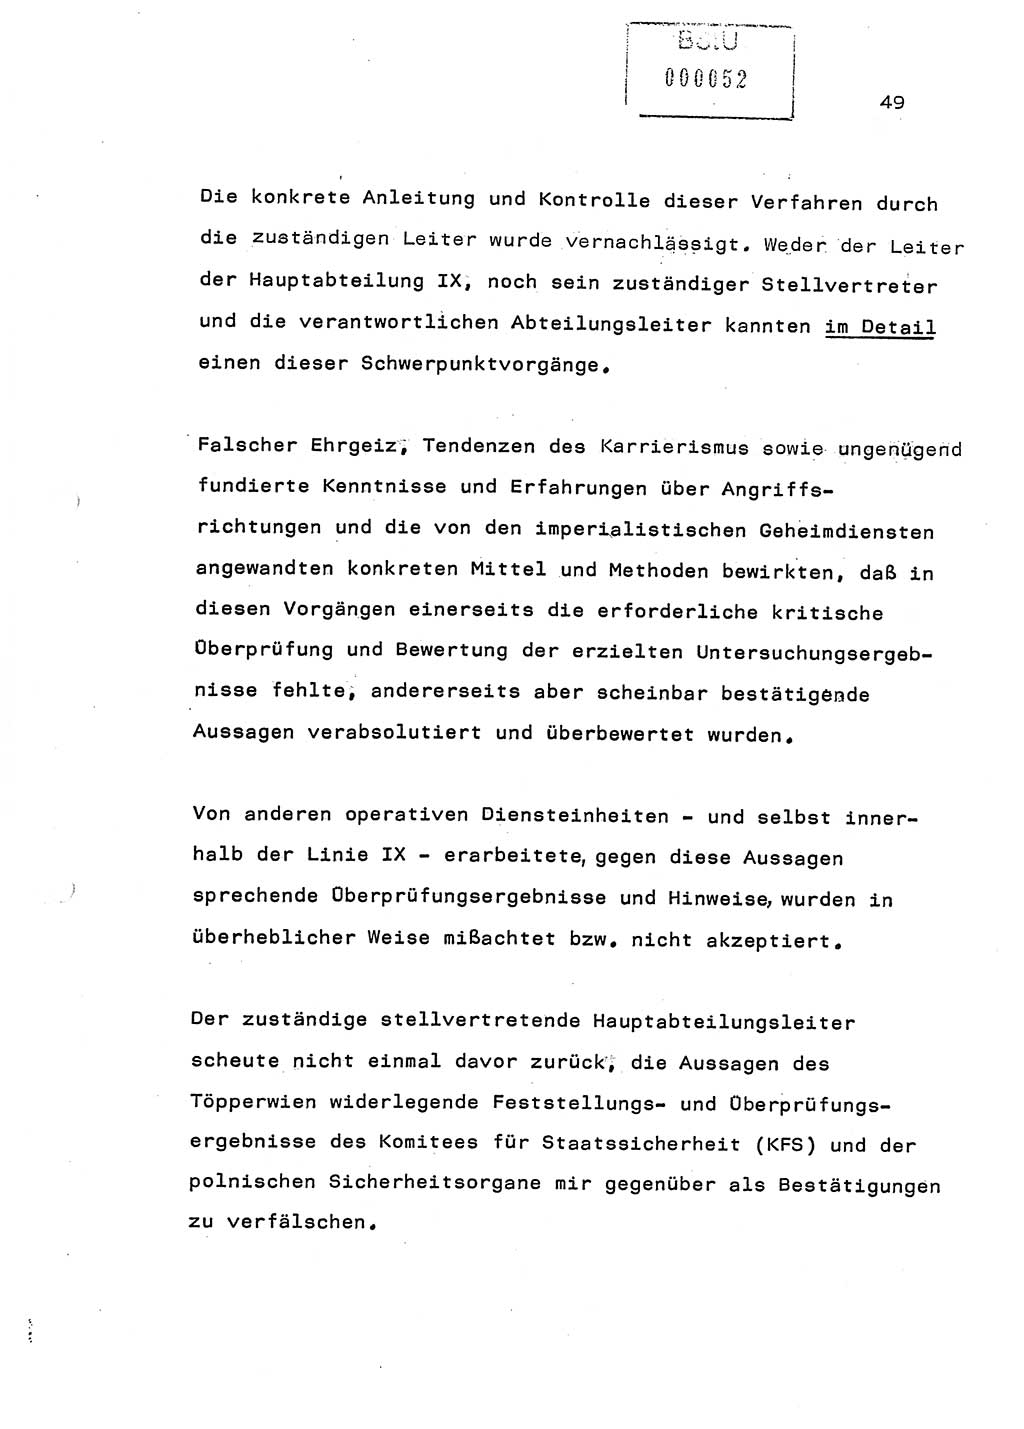 Referat (Generaloberst Erich Mielke) auf der Zentralen Dienstkonferenz am 24.5.1979 [Ministerium für Staatssicherheit (MfS), Deutsche Demokratische Republik (DDR), Der Minister], Berlin 1979, Seite 49 (Ref. DK DDR MfS Min. /79 1979, S. 49)